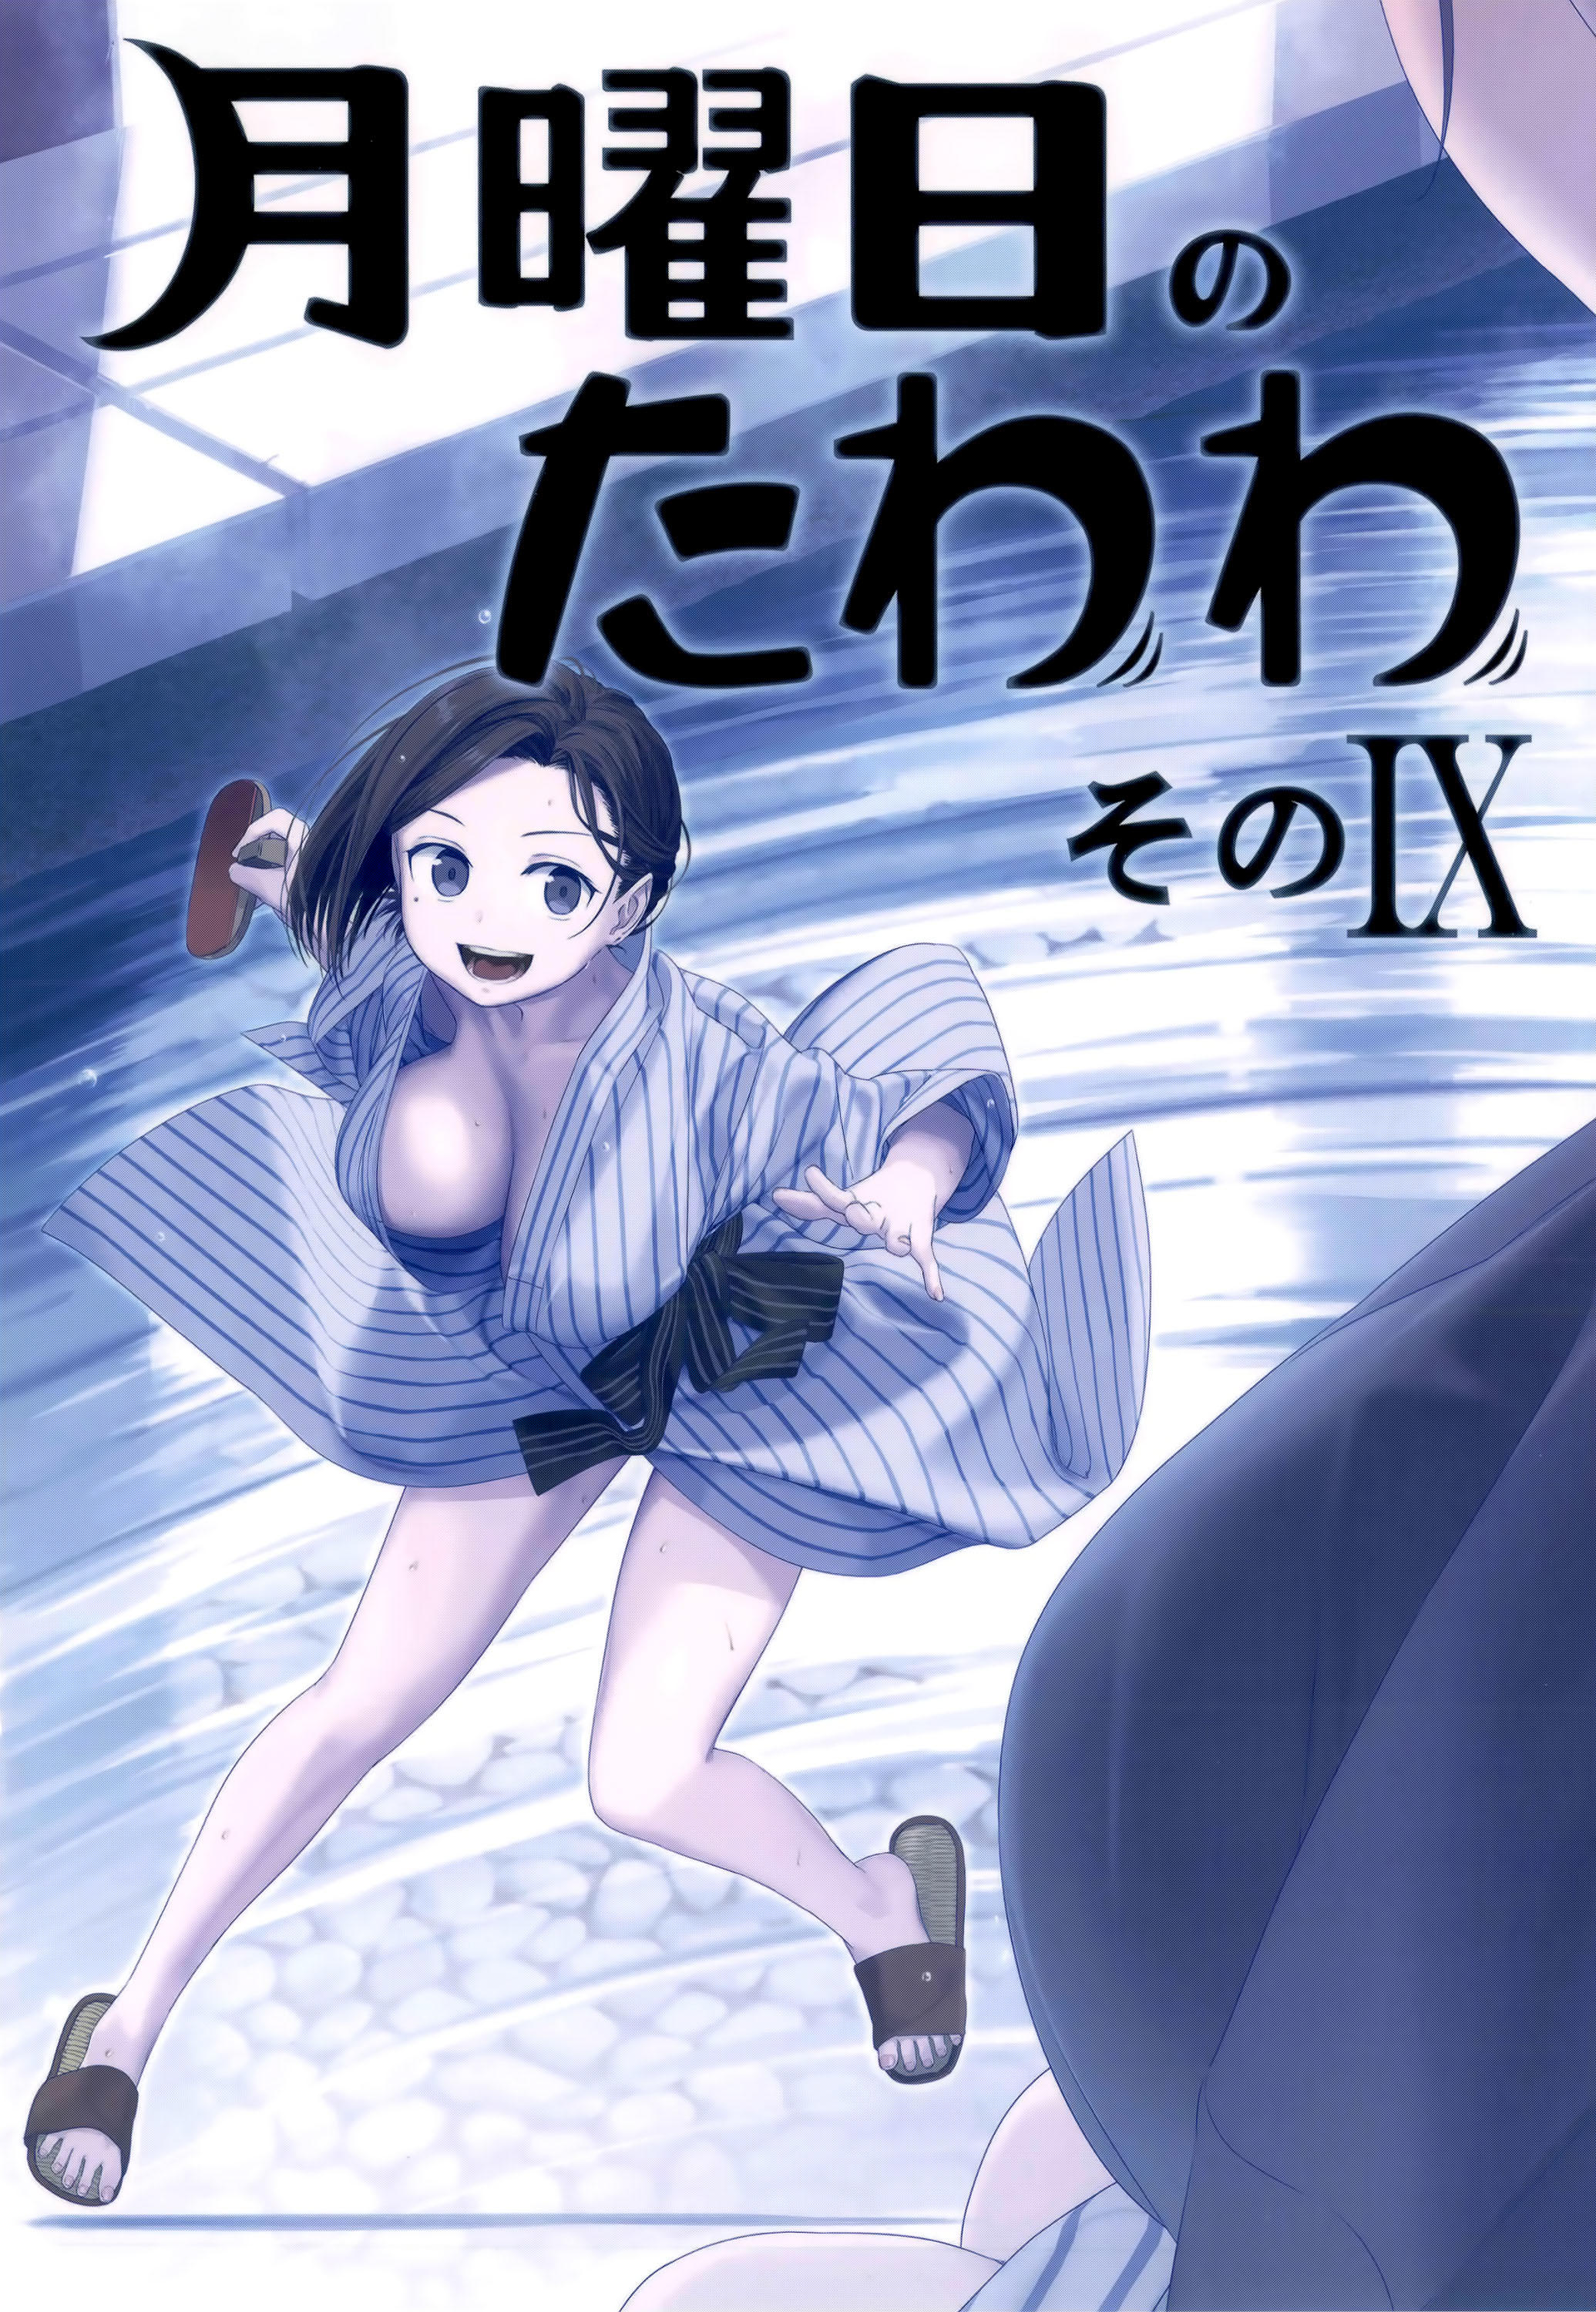 Read Getsuyoubi No Tawawa Chapter 88: Cheer-Chan, Part 7 on Mangakakalot